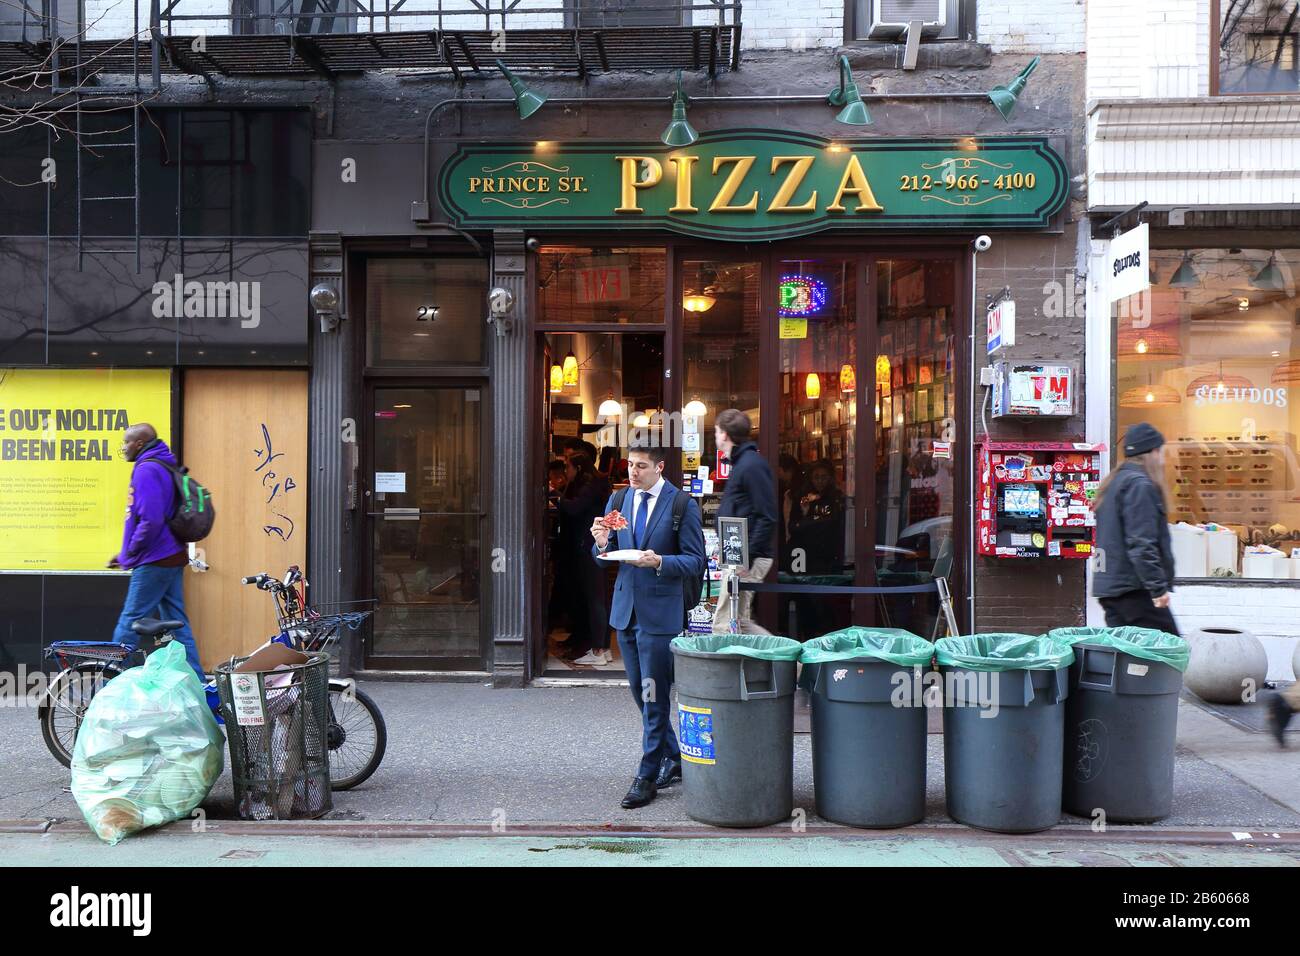 Prince St. Pizza, 27 Prince Street, New York. NYC Schaufenster Foto von einem Pizzaladen im Nolita Viertel von Manhattan. Stockfoto